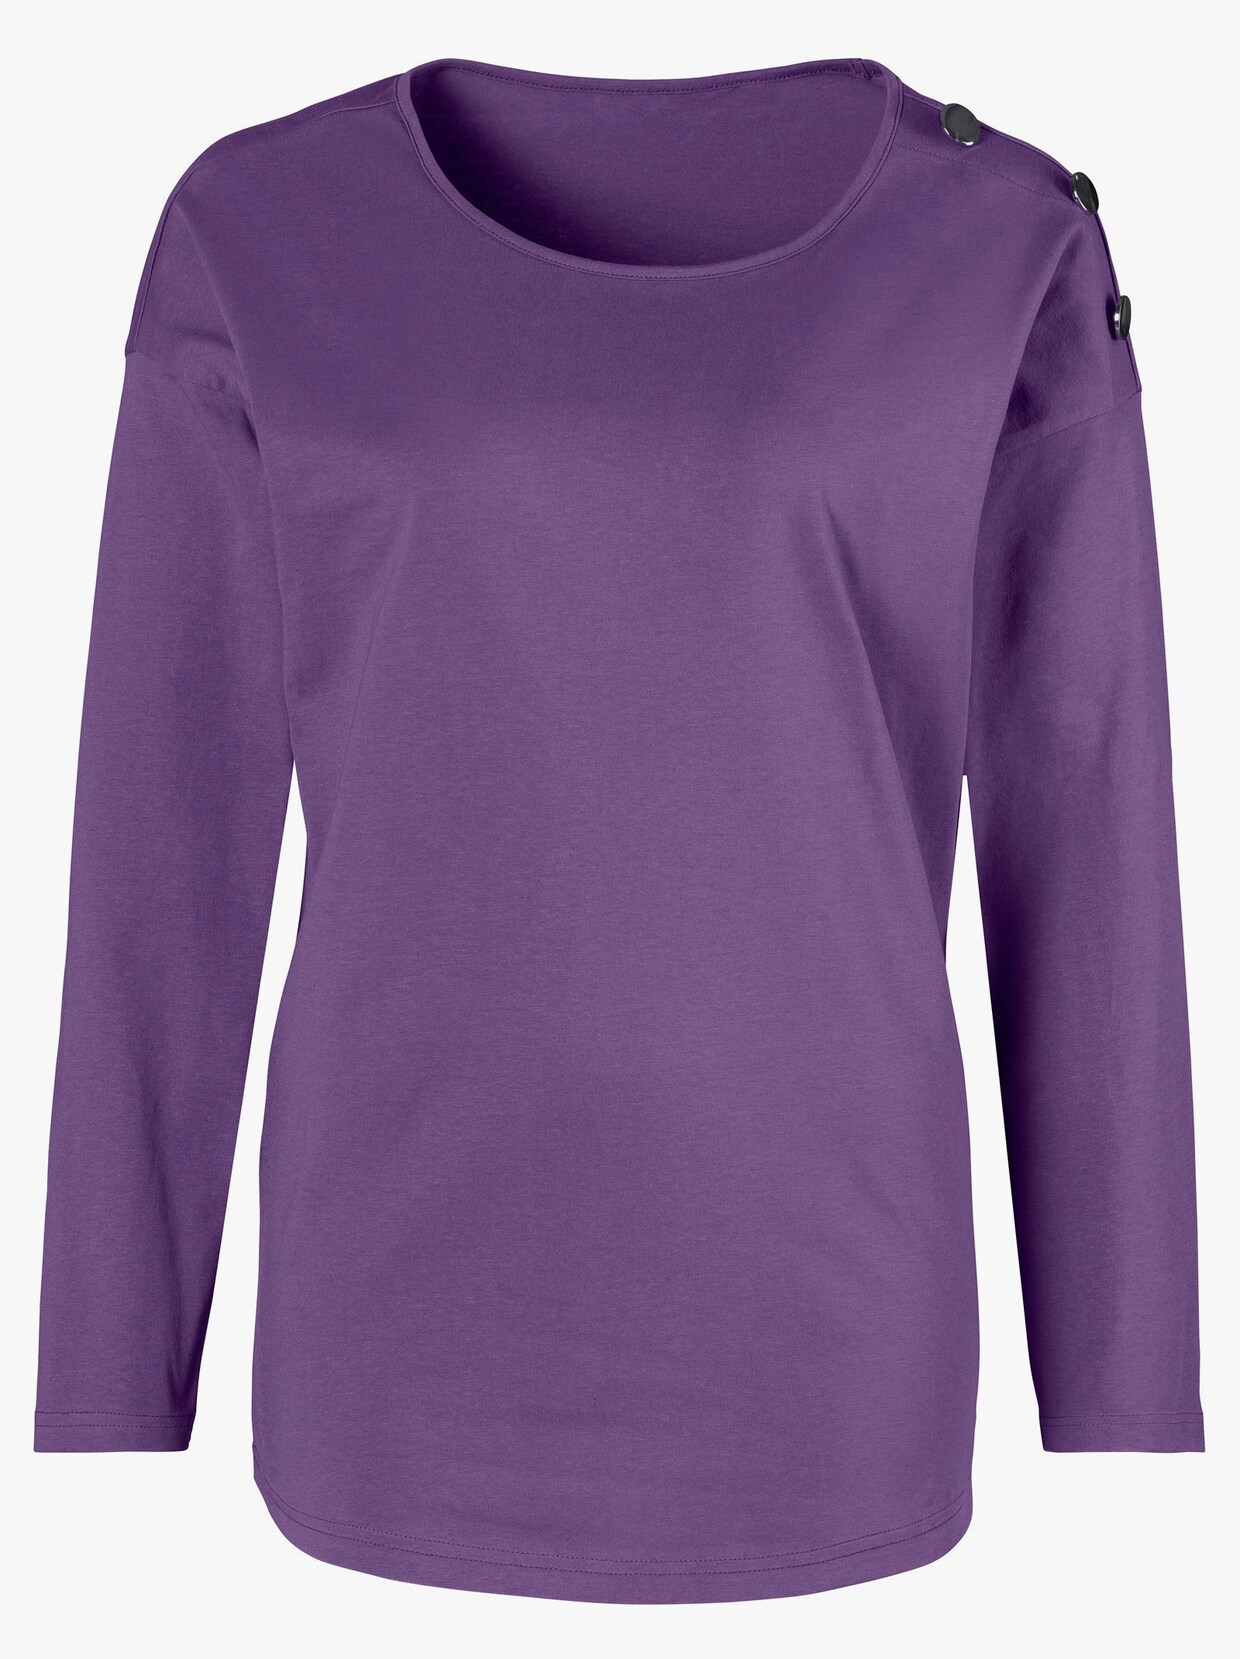 Tričko s dlhými rukávmi - fialová